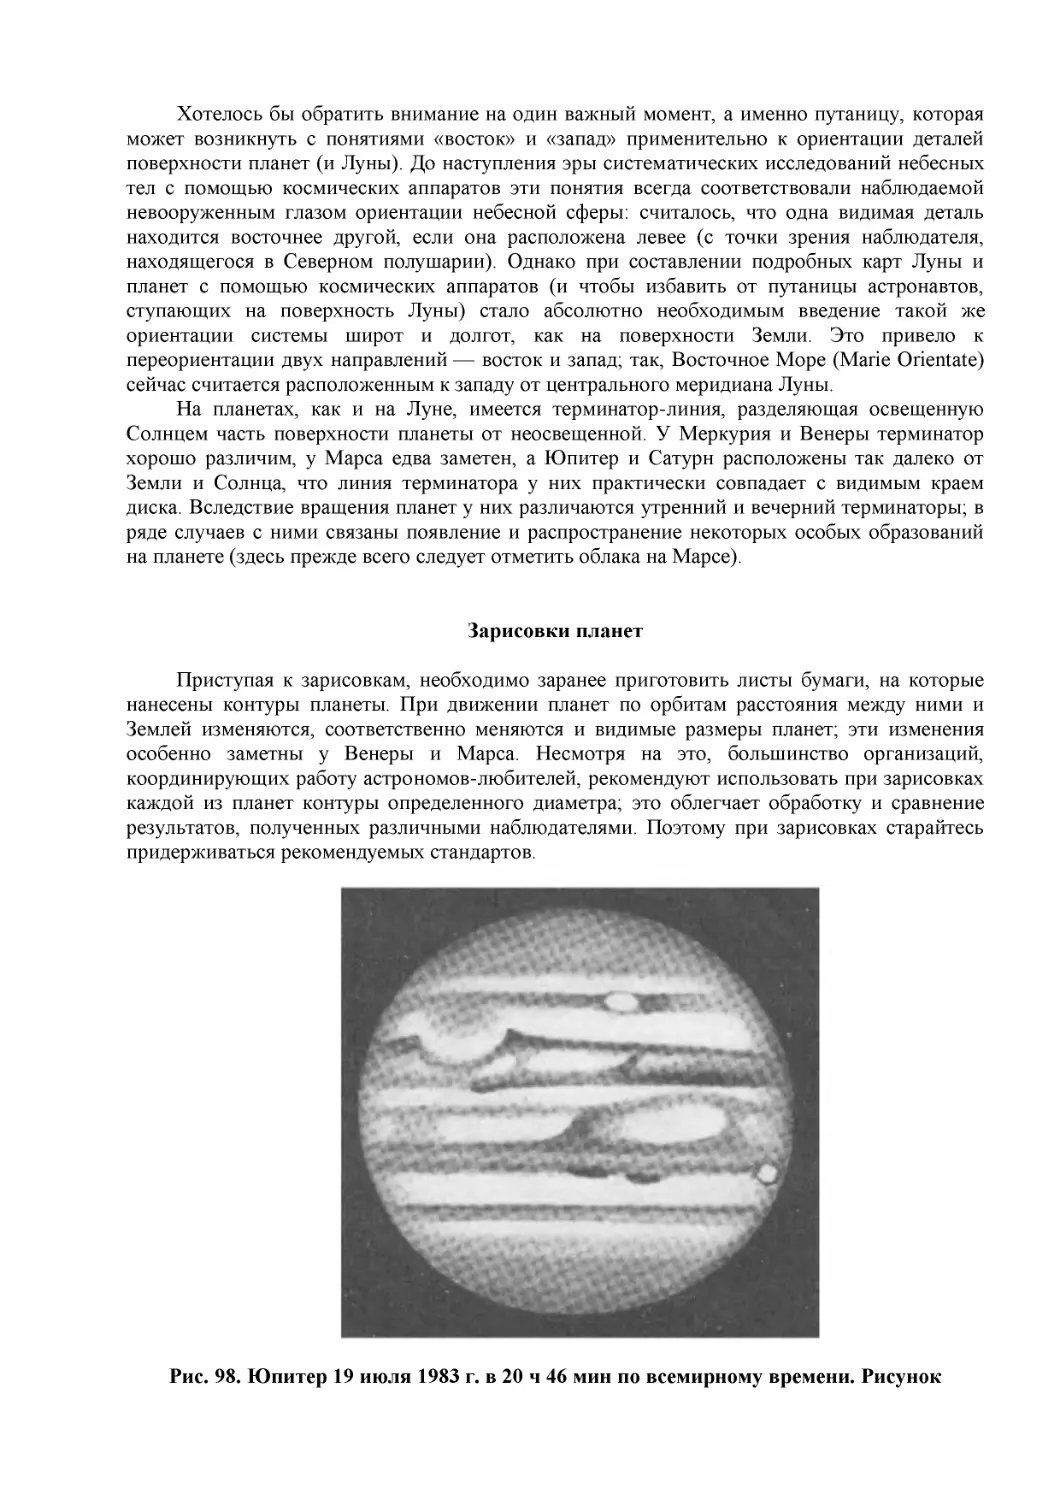 Зарисовки планет
Рис. 98. Юпитер 19 июля 1983 г. в 20 ч 46 мин по всемирному времени. Рисунок Ричарда Маккима, сделанный при наблюдении в телескоп-рефлектор с зеркалом диаметром 216 мм (8 дюймов). Виден спутник Ио, пересекающий диск планеты вдоль границы между Северно...